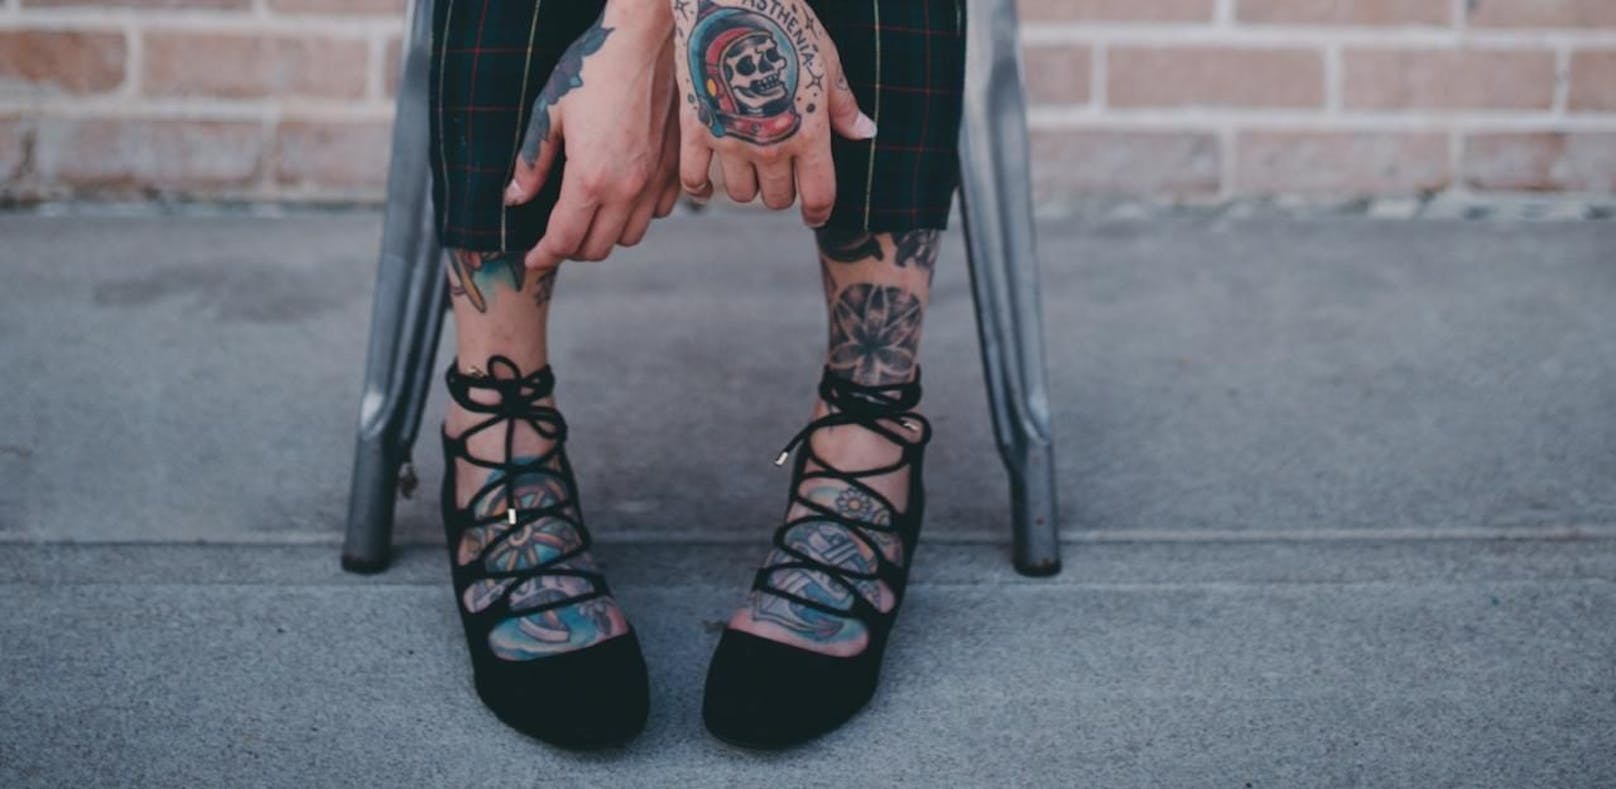 Diese Bein-Tattoos sind wahre Kunstwerke